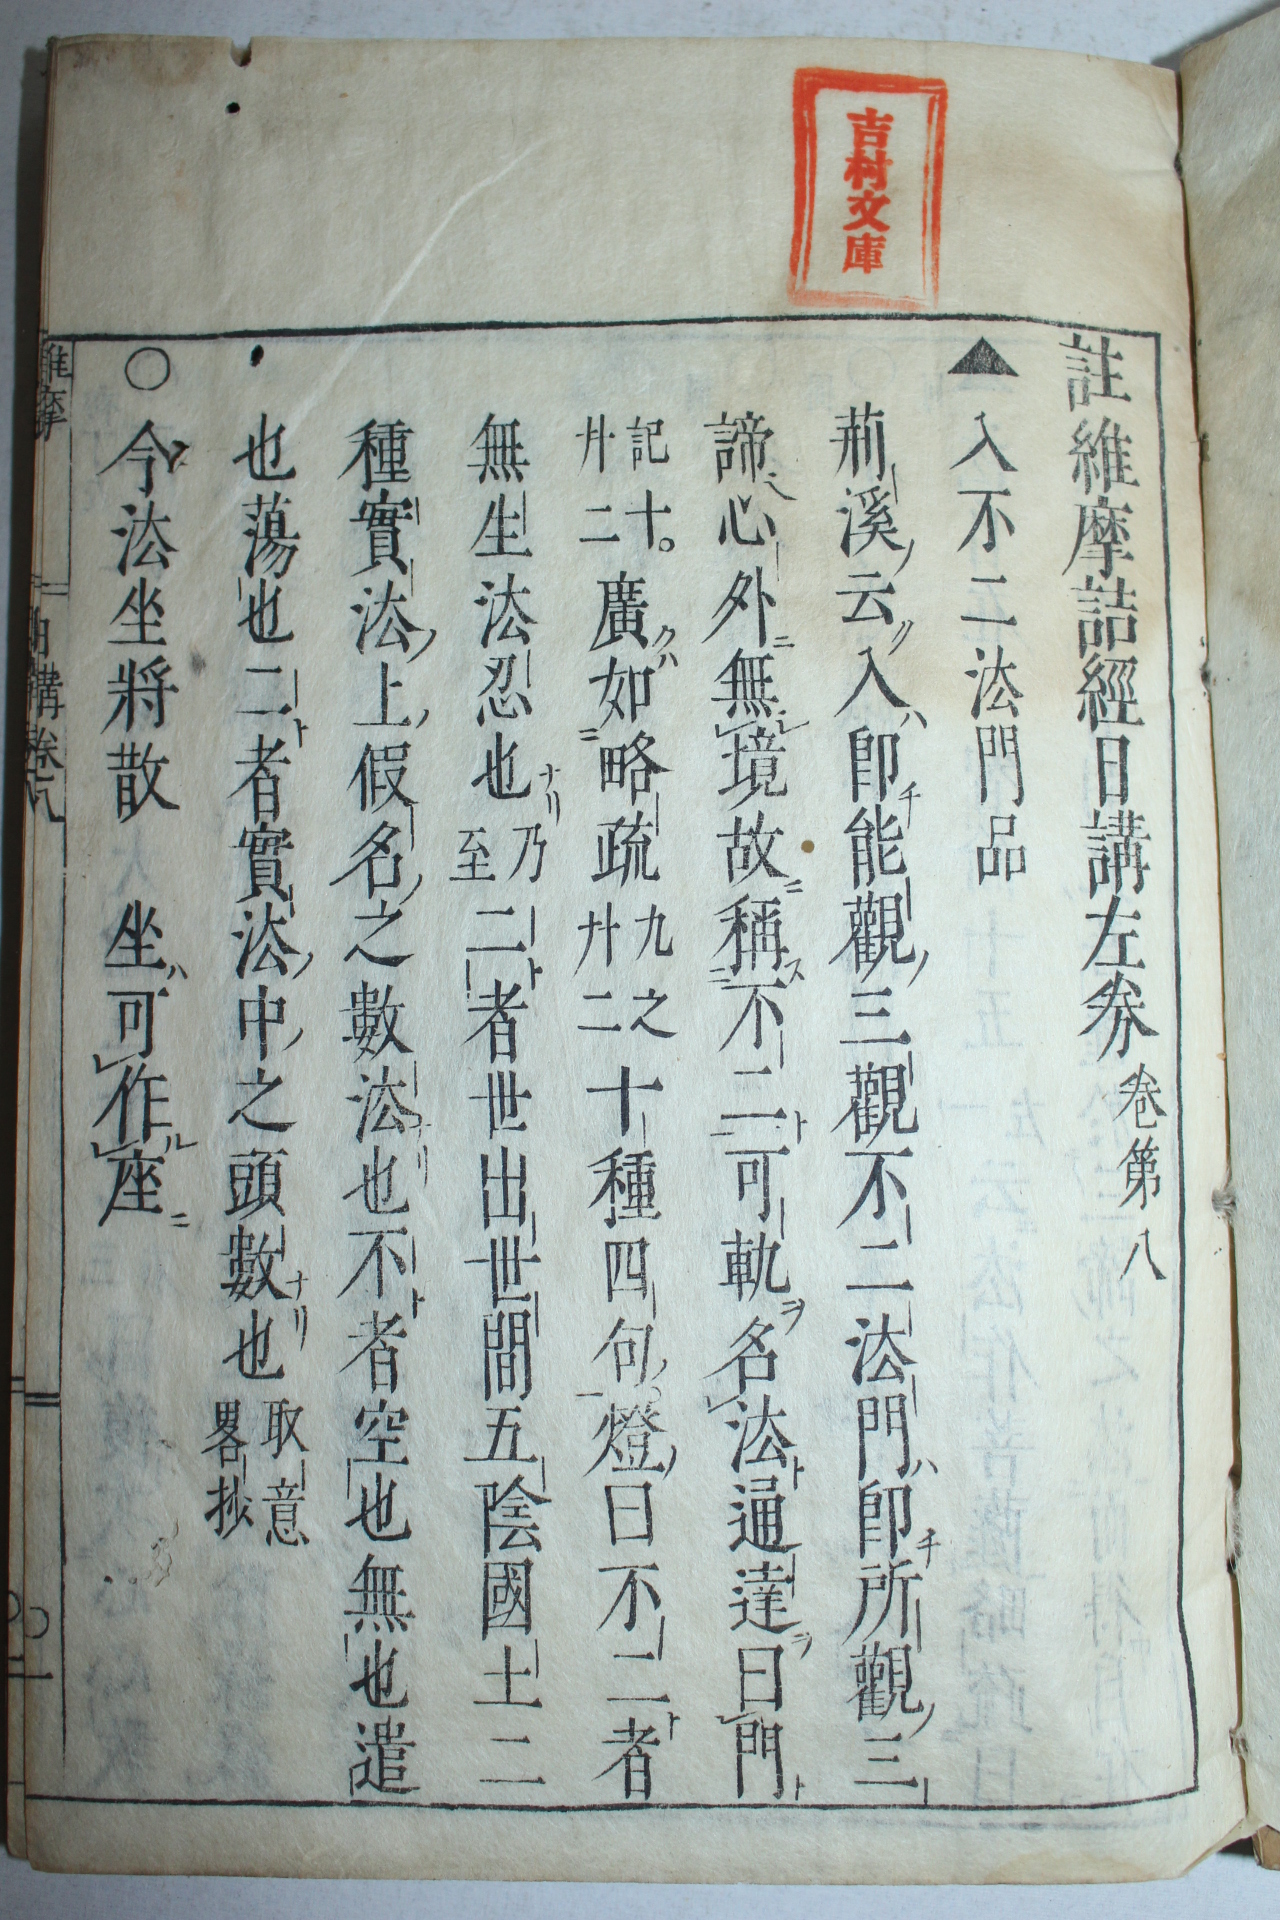 1700년(元錄13年) 일본목판본 주유마힐경일강좌(註維摩詰經日講左) 5권5책완질